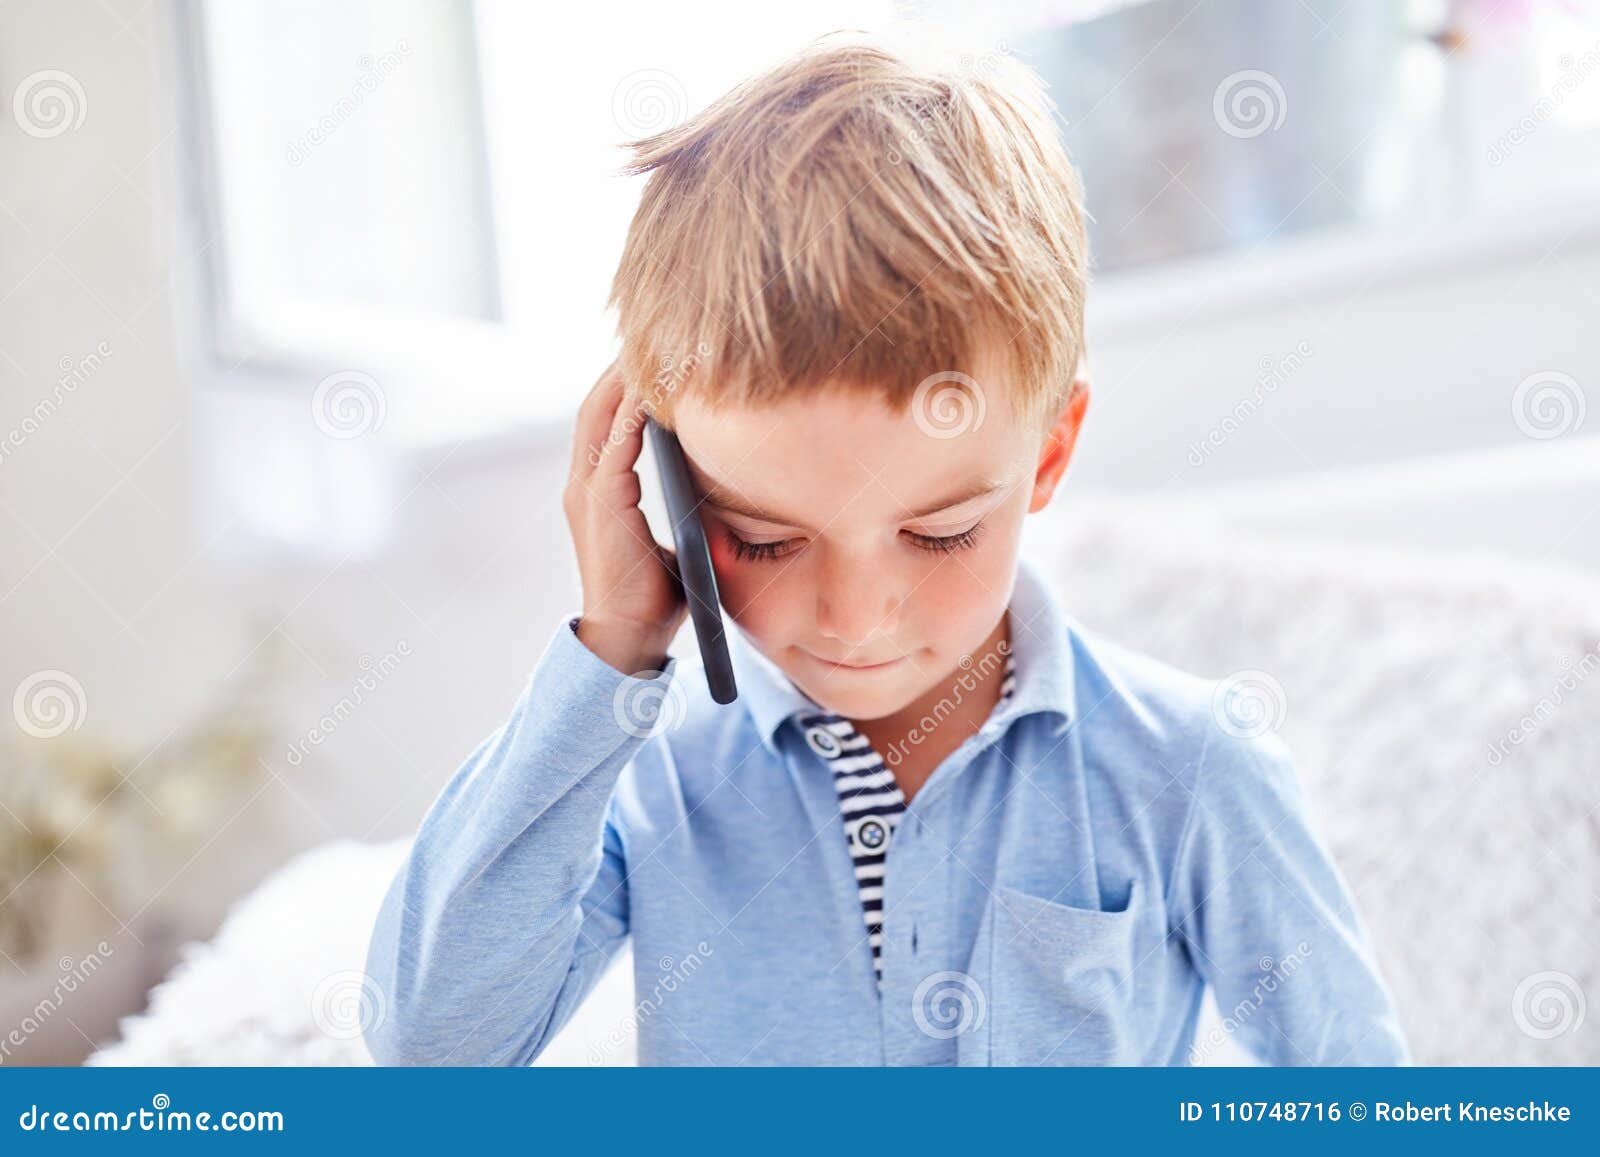 Включи телефон мальчик. Папа мальчик с телефоном. Мальчик звонит в полицию. Мальчик звонит в милицию. Юноша разговаривает по телефону.